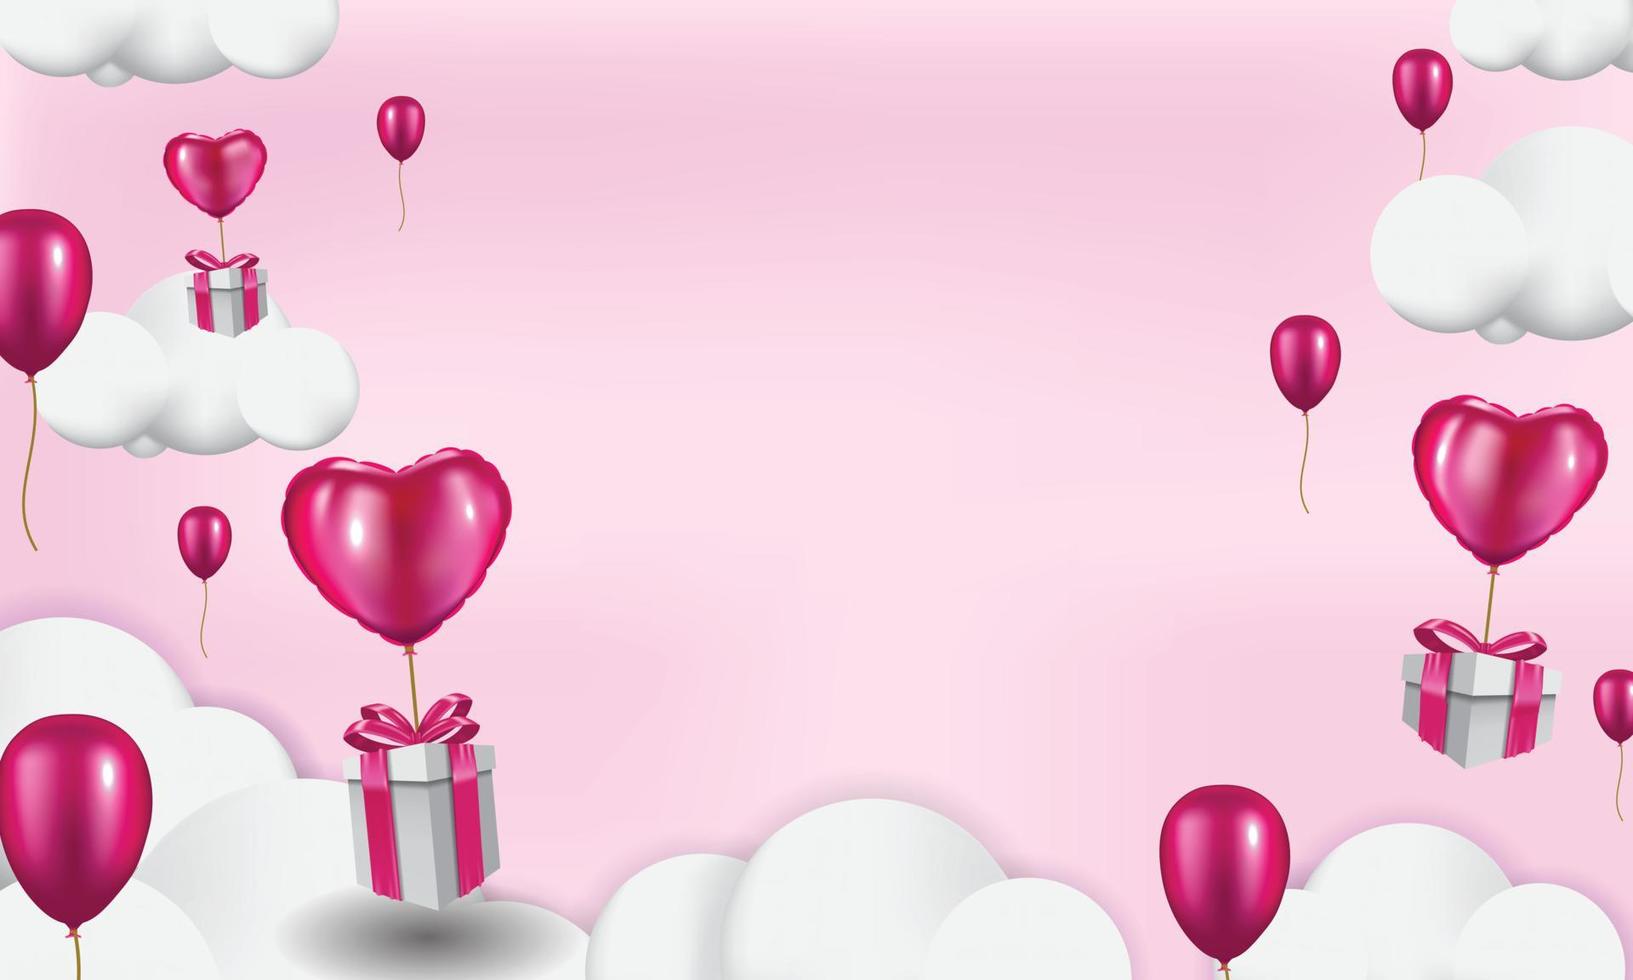 cajas de regalo con globo de corazón flotando en el cielo, plantilla de fondo del día de san valentín, estilo realista en 3d vector